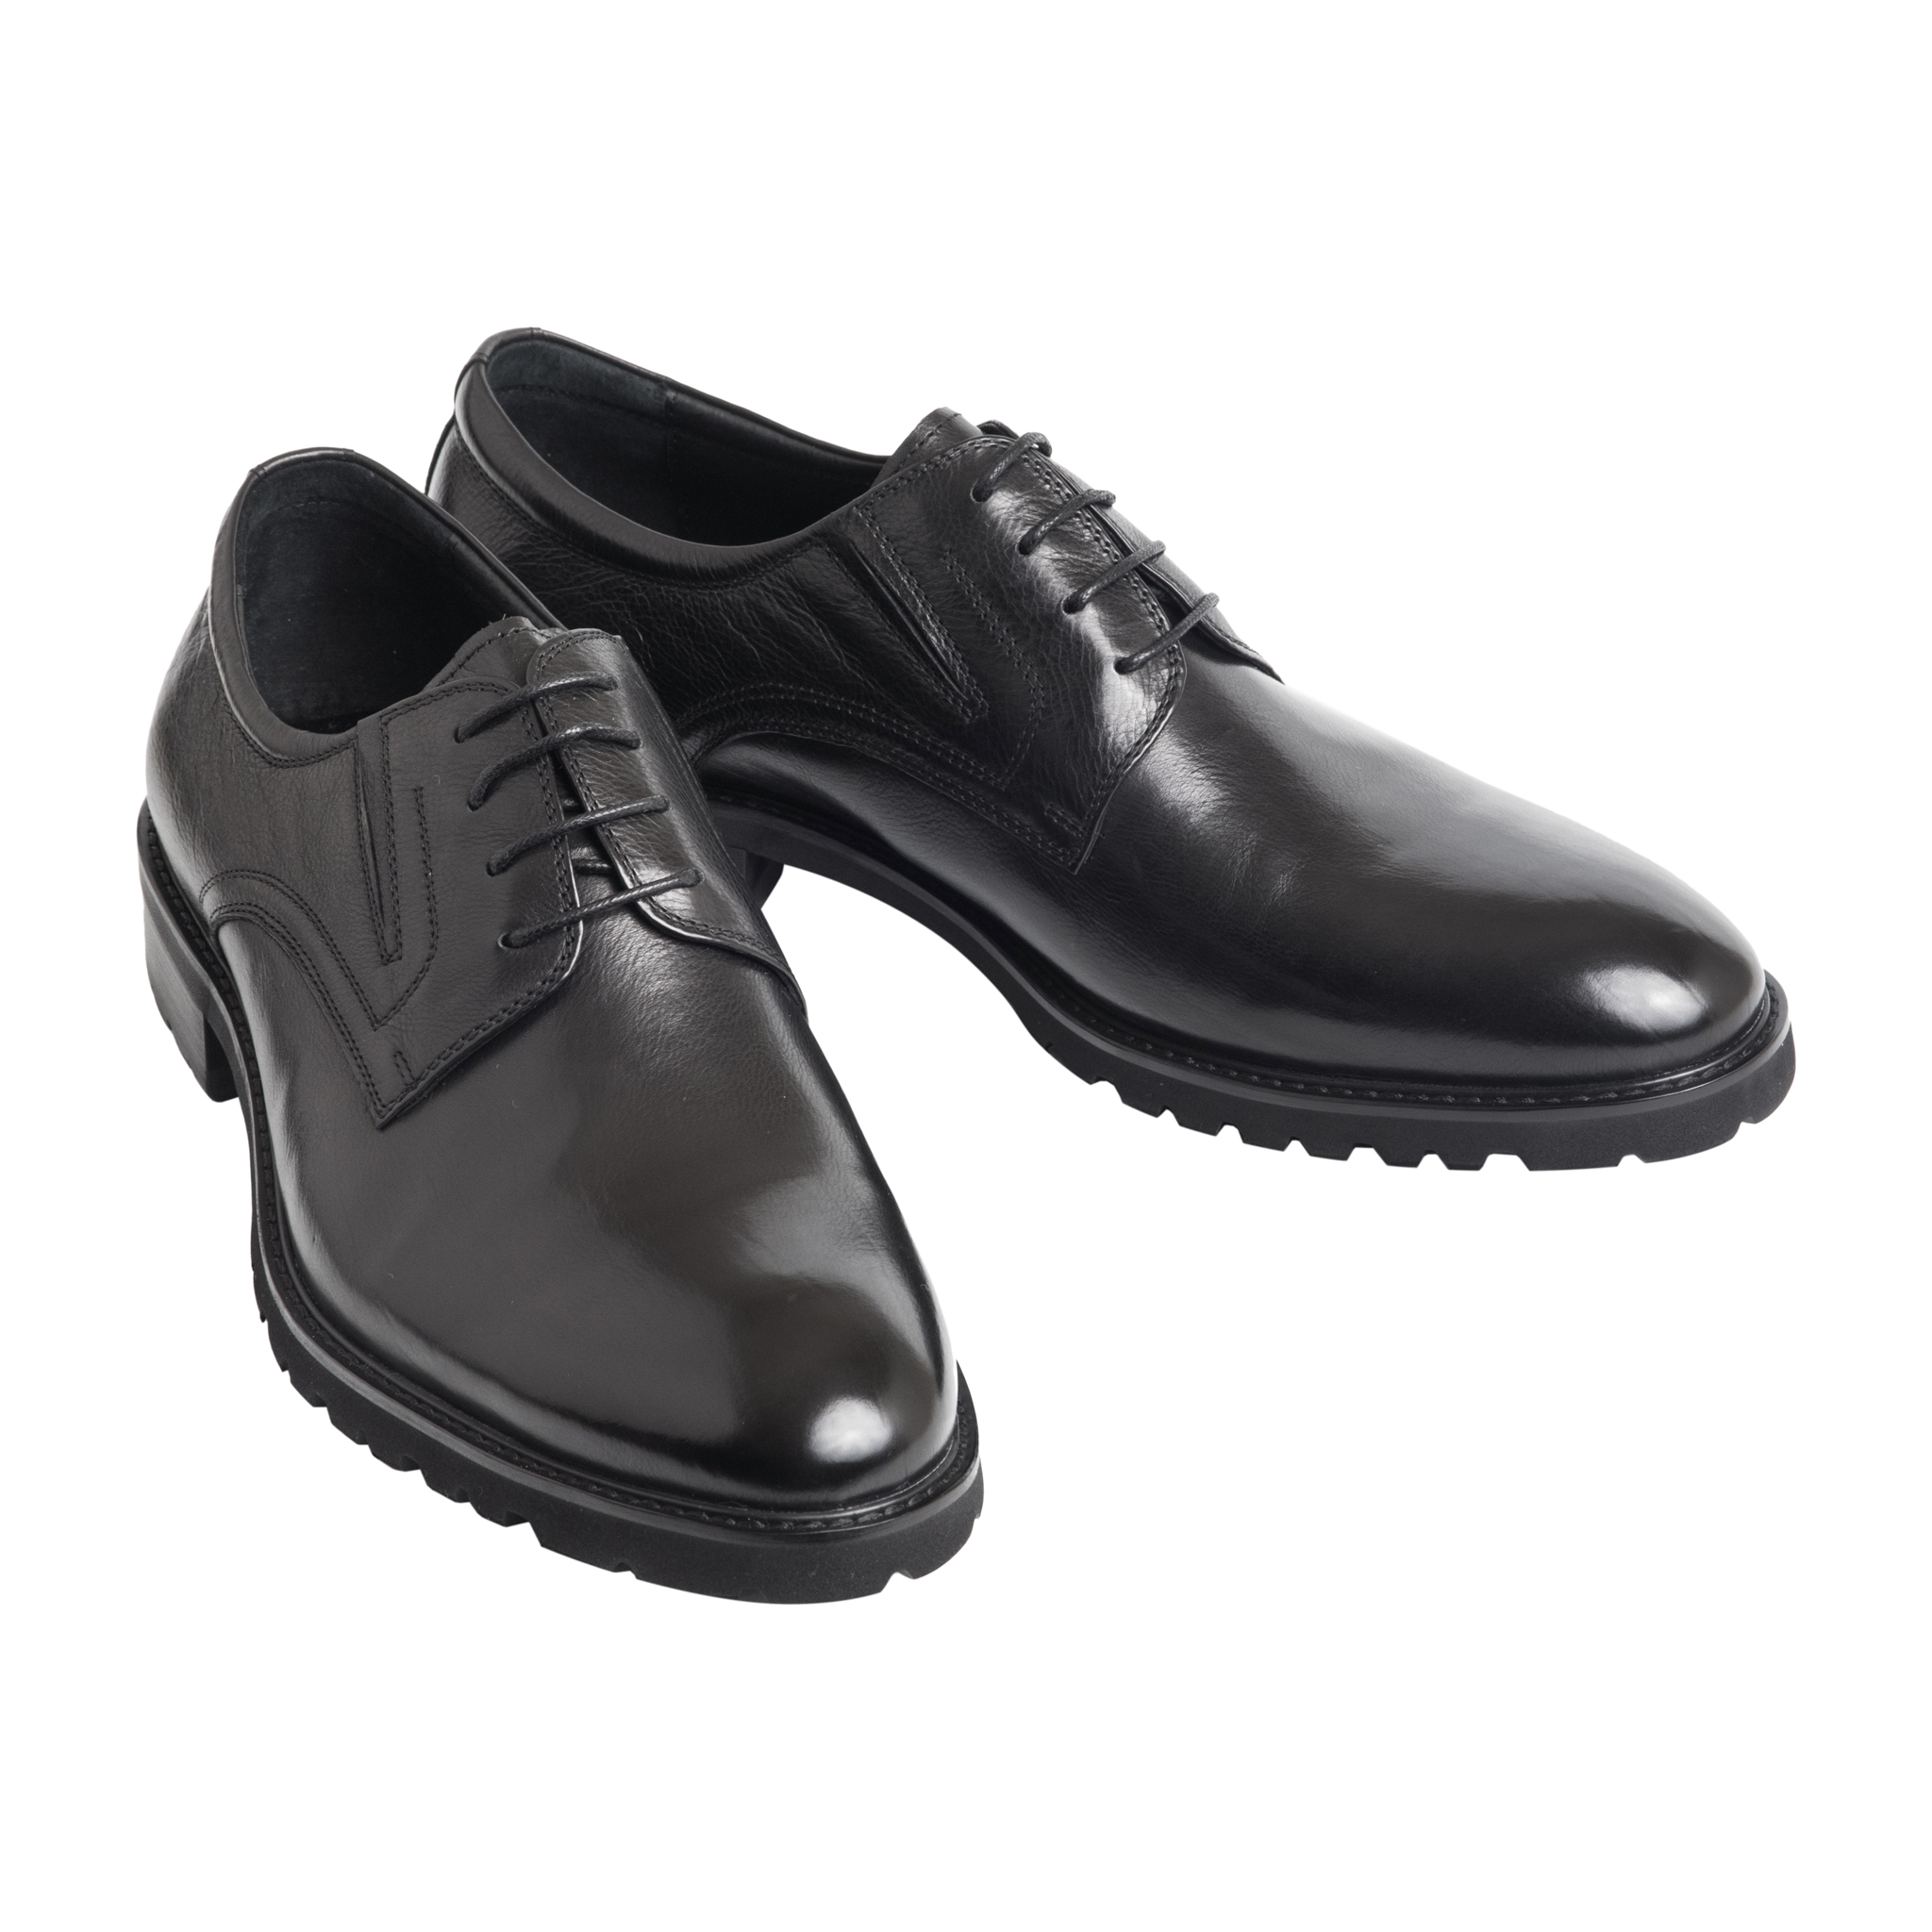 Мужская кожаная обувь Calipso (полуботинки) - рейтинг 2 по отзывам  экспертов ☑ Экспертиза состава и производителя | Роскачество